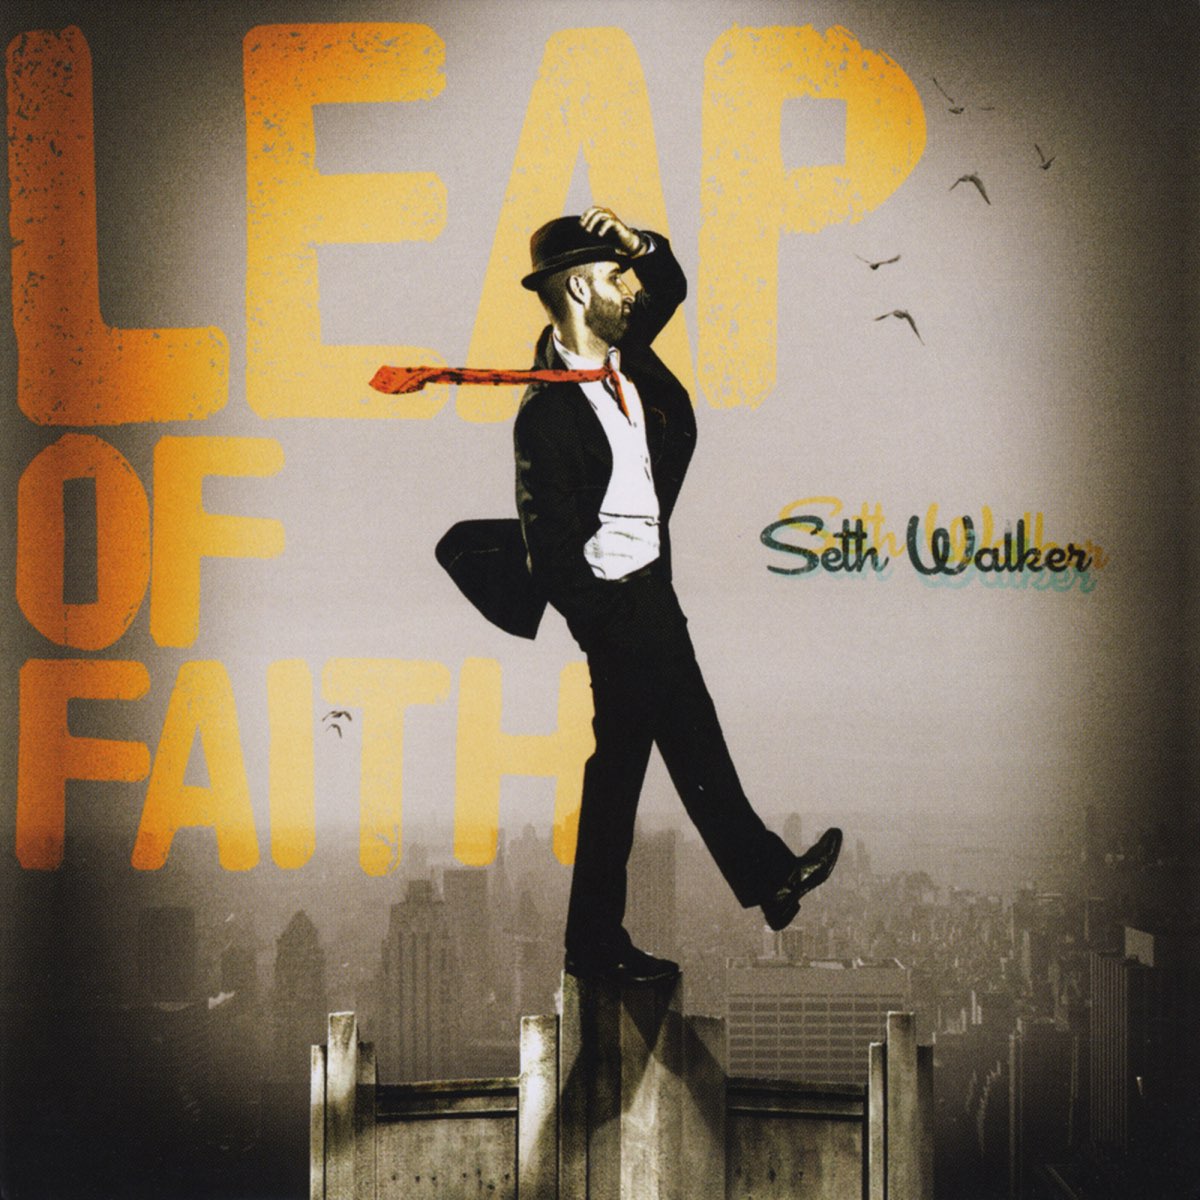 Something fast. Seth Walker - Seth Walker (2006). BONBI Seth Walker. Seth Walker - Sky still Blue 2014. Leap of Faith.